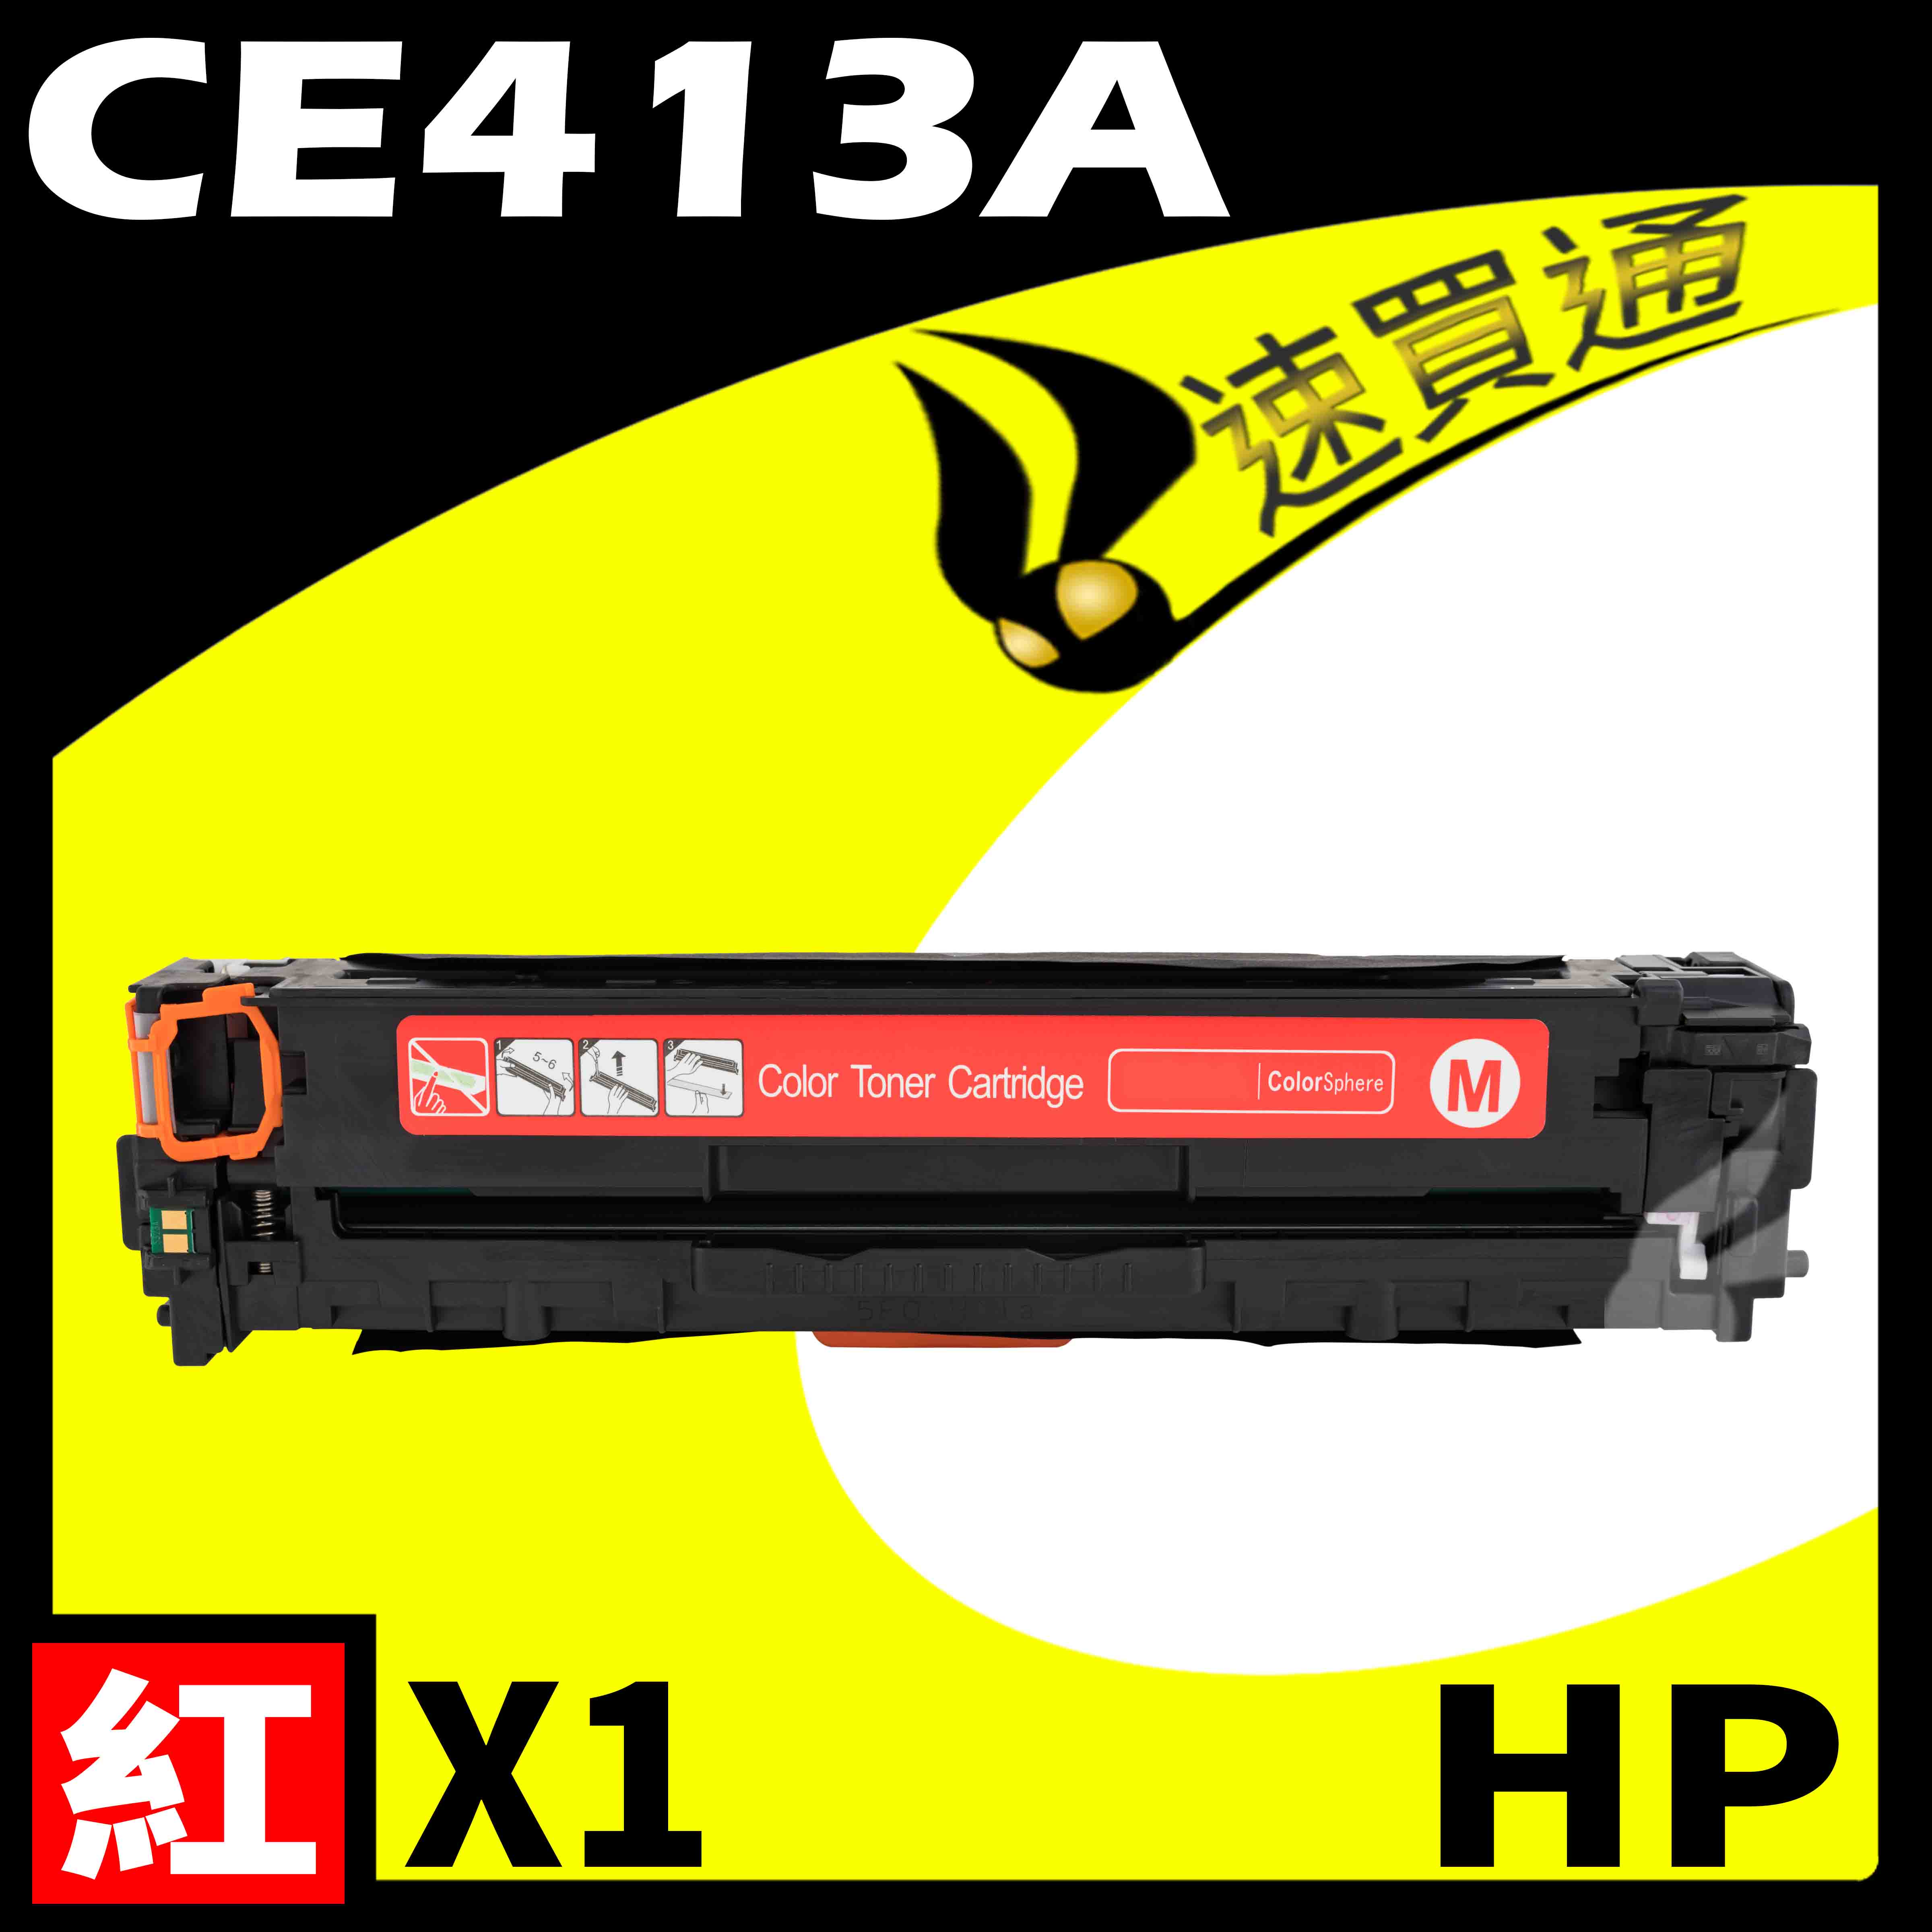 【速買通】HP CE413A 紅 相容彩色碳粉匣